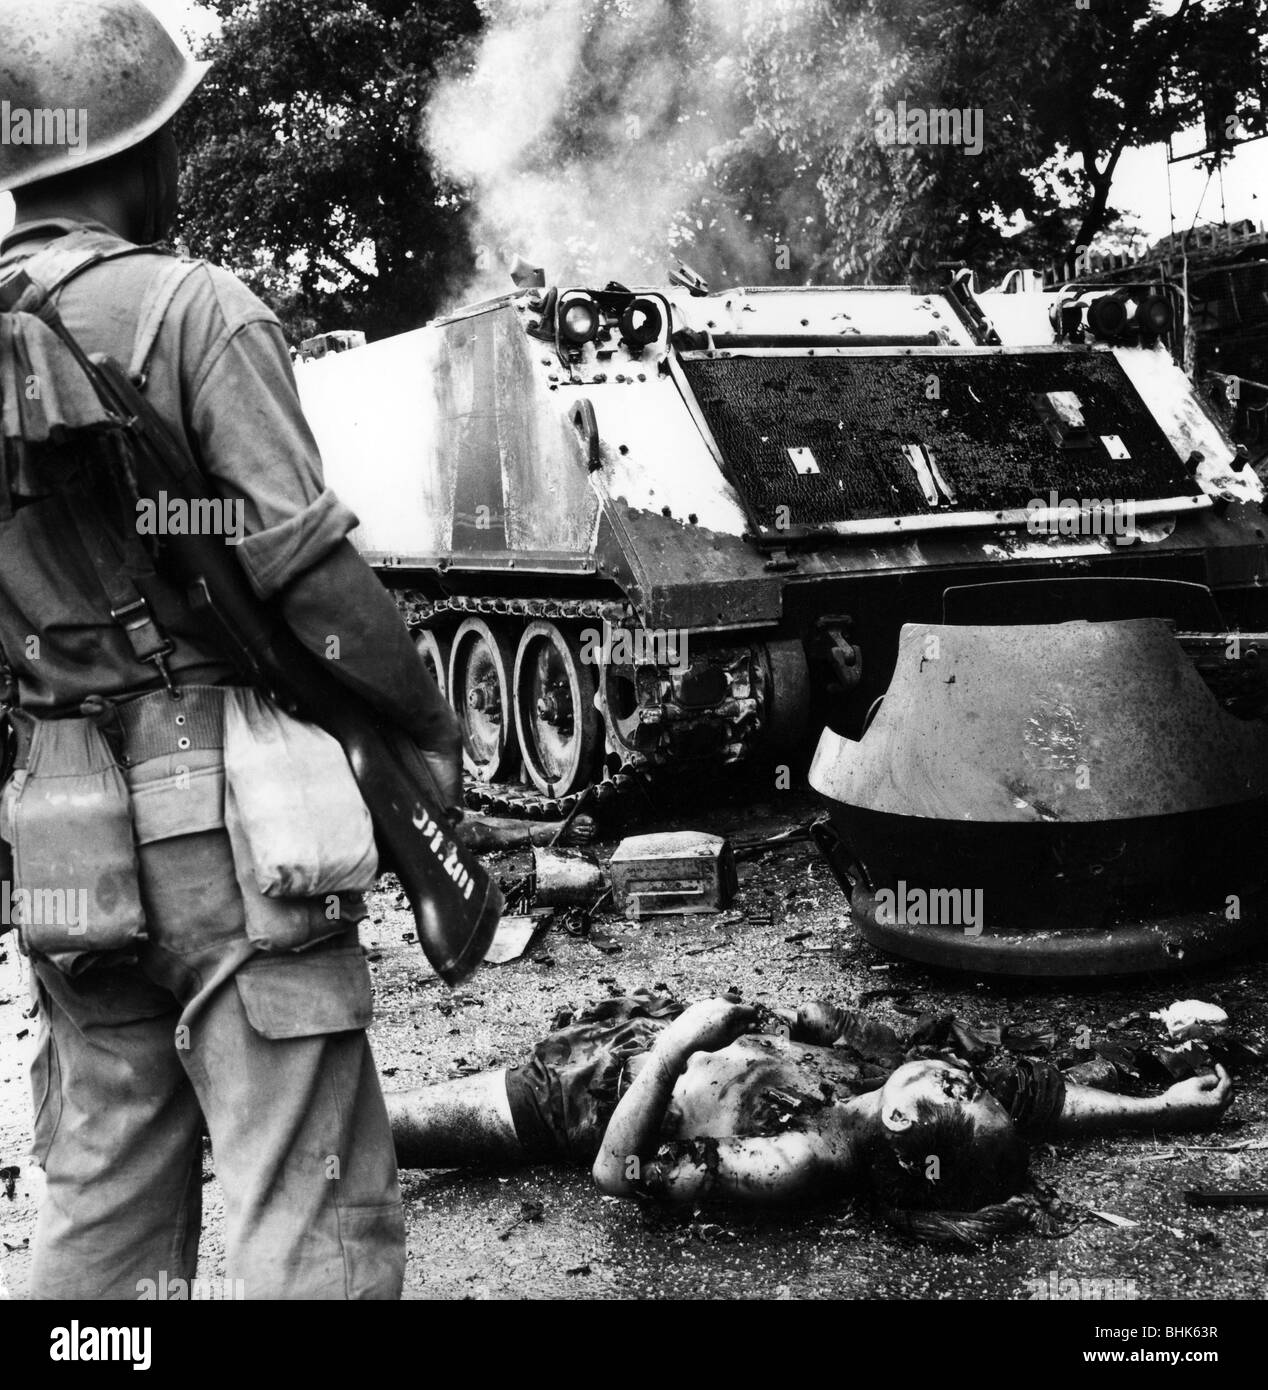 Événements, guerre du Vietnam, corps morts et véhicule militaire détruit après une attaque du Viet Cong contre Phnom Penh, capitale du Cambodge, 7.10.1972, Banque D'Images